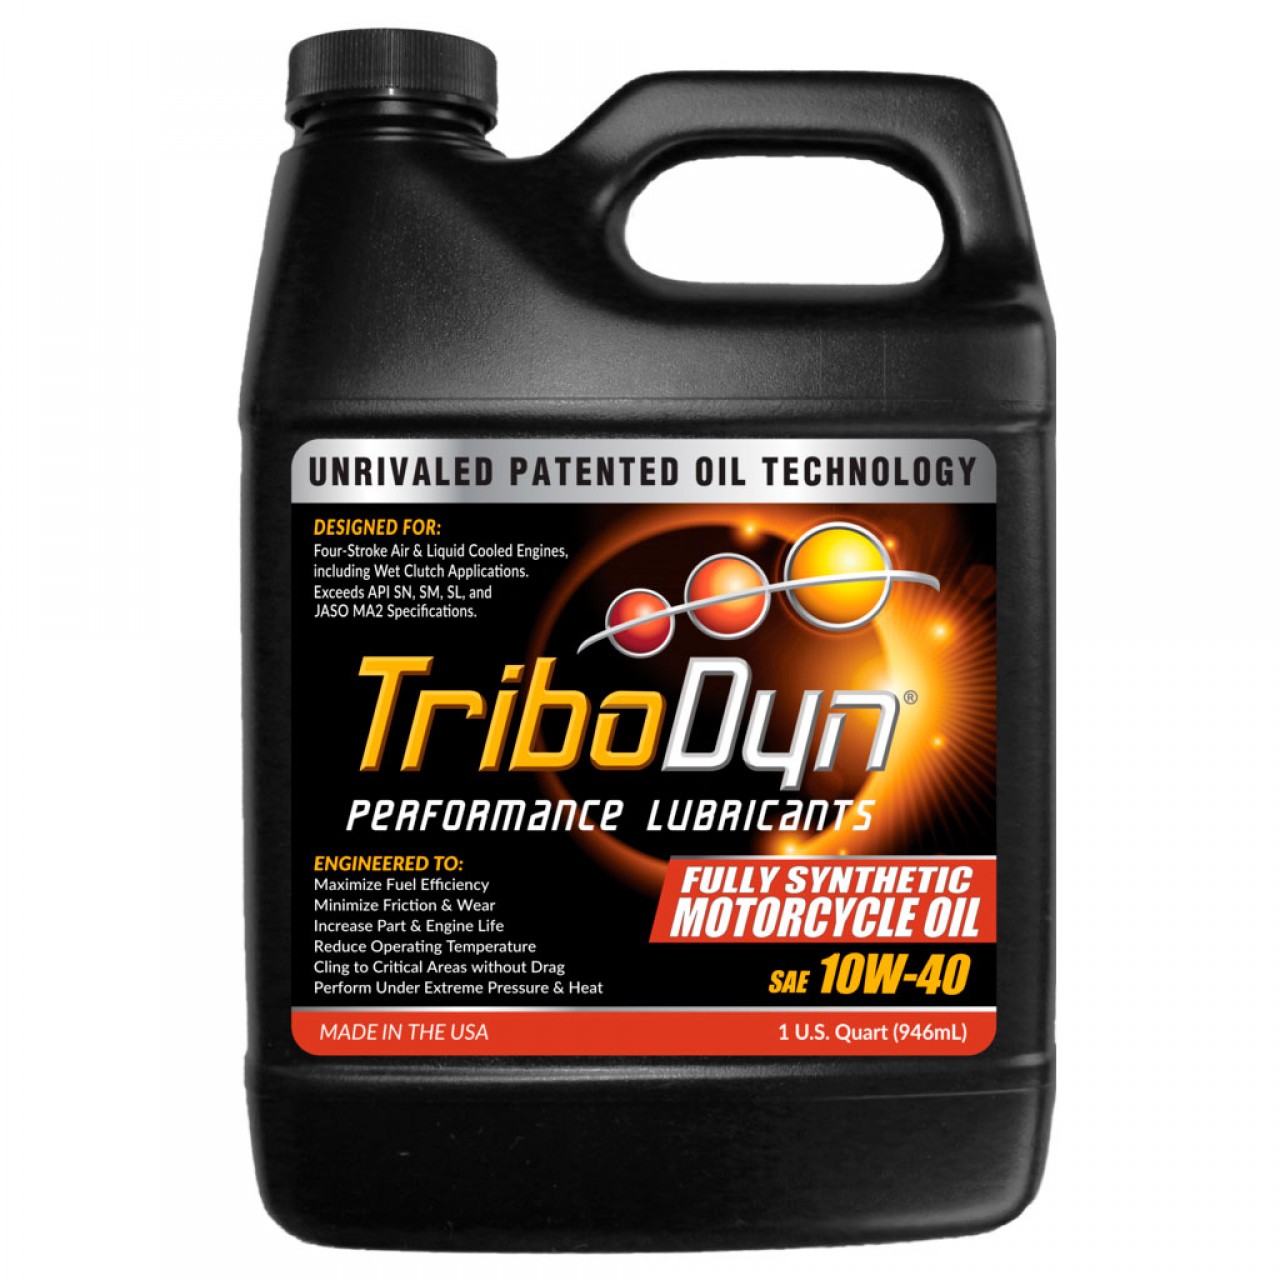 TriboDyn Fully Synthetic MP öljy 10w-40 (0.946 L)